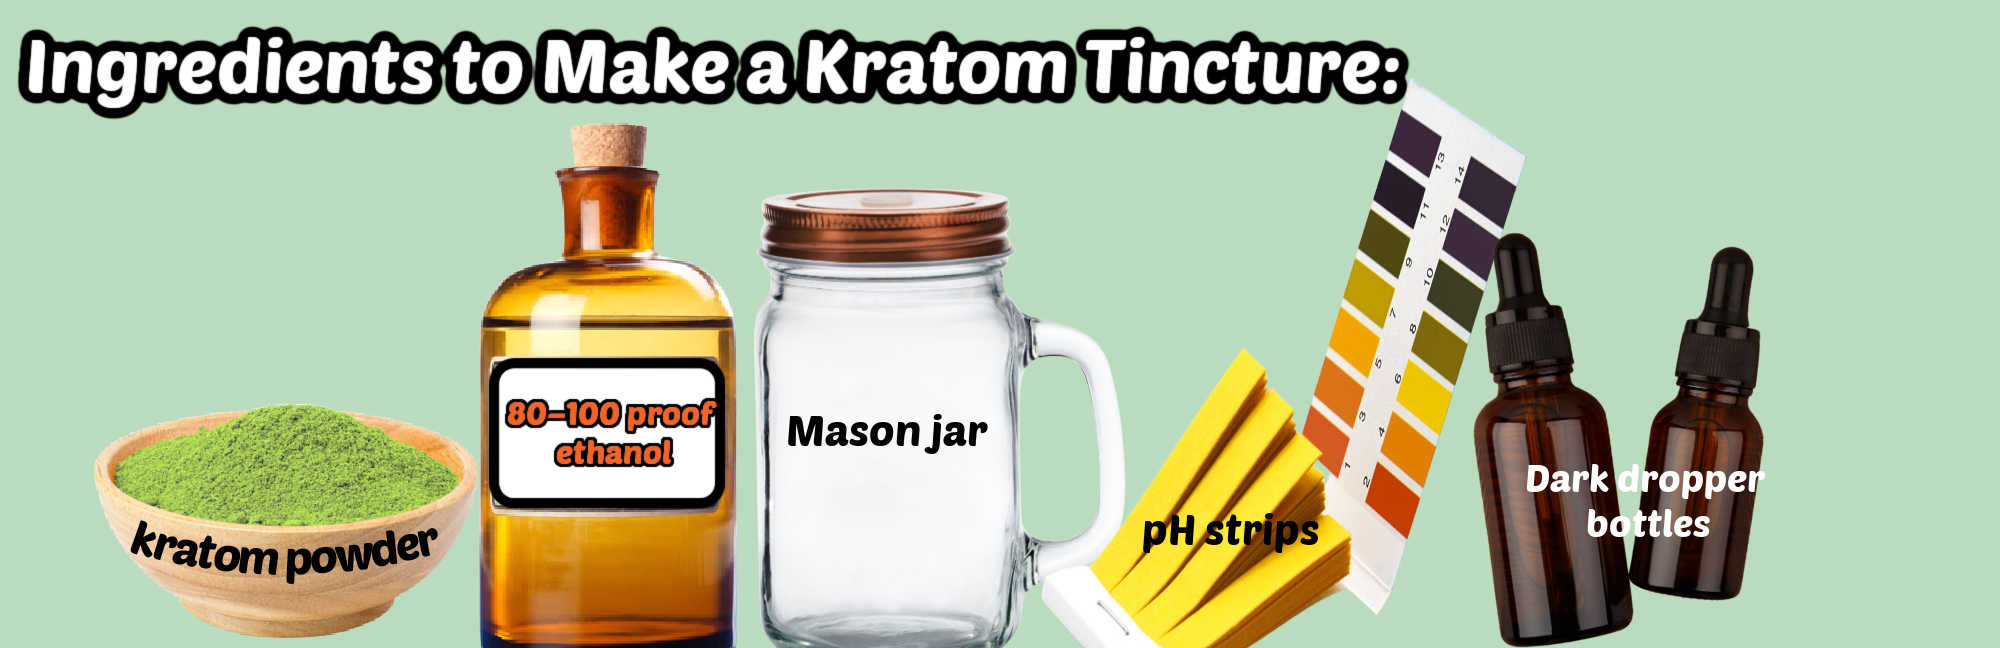 image of ingredients to make kratom tincture